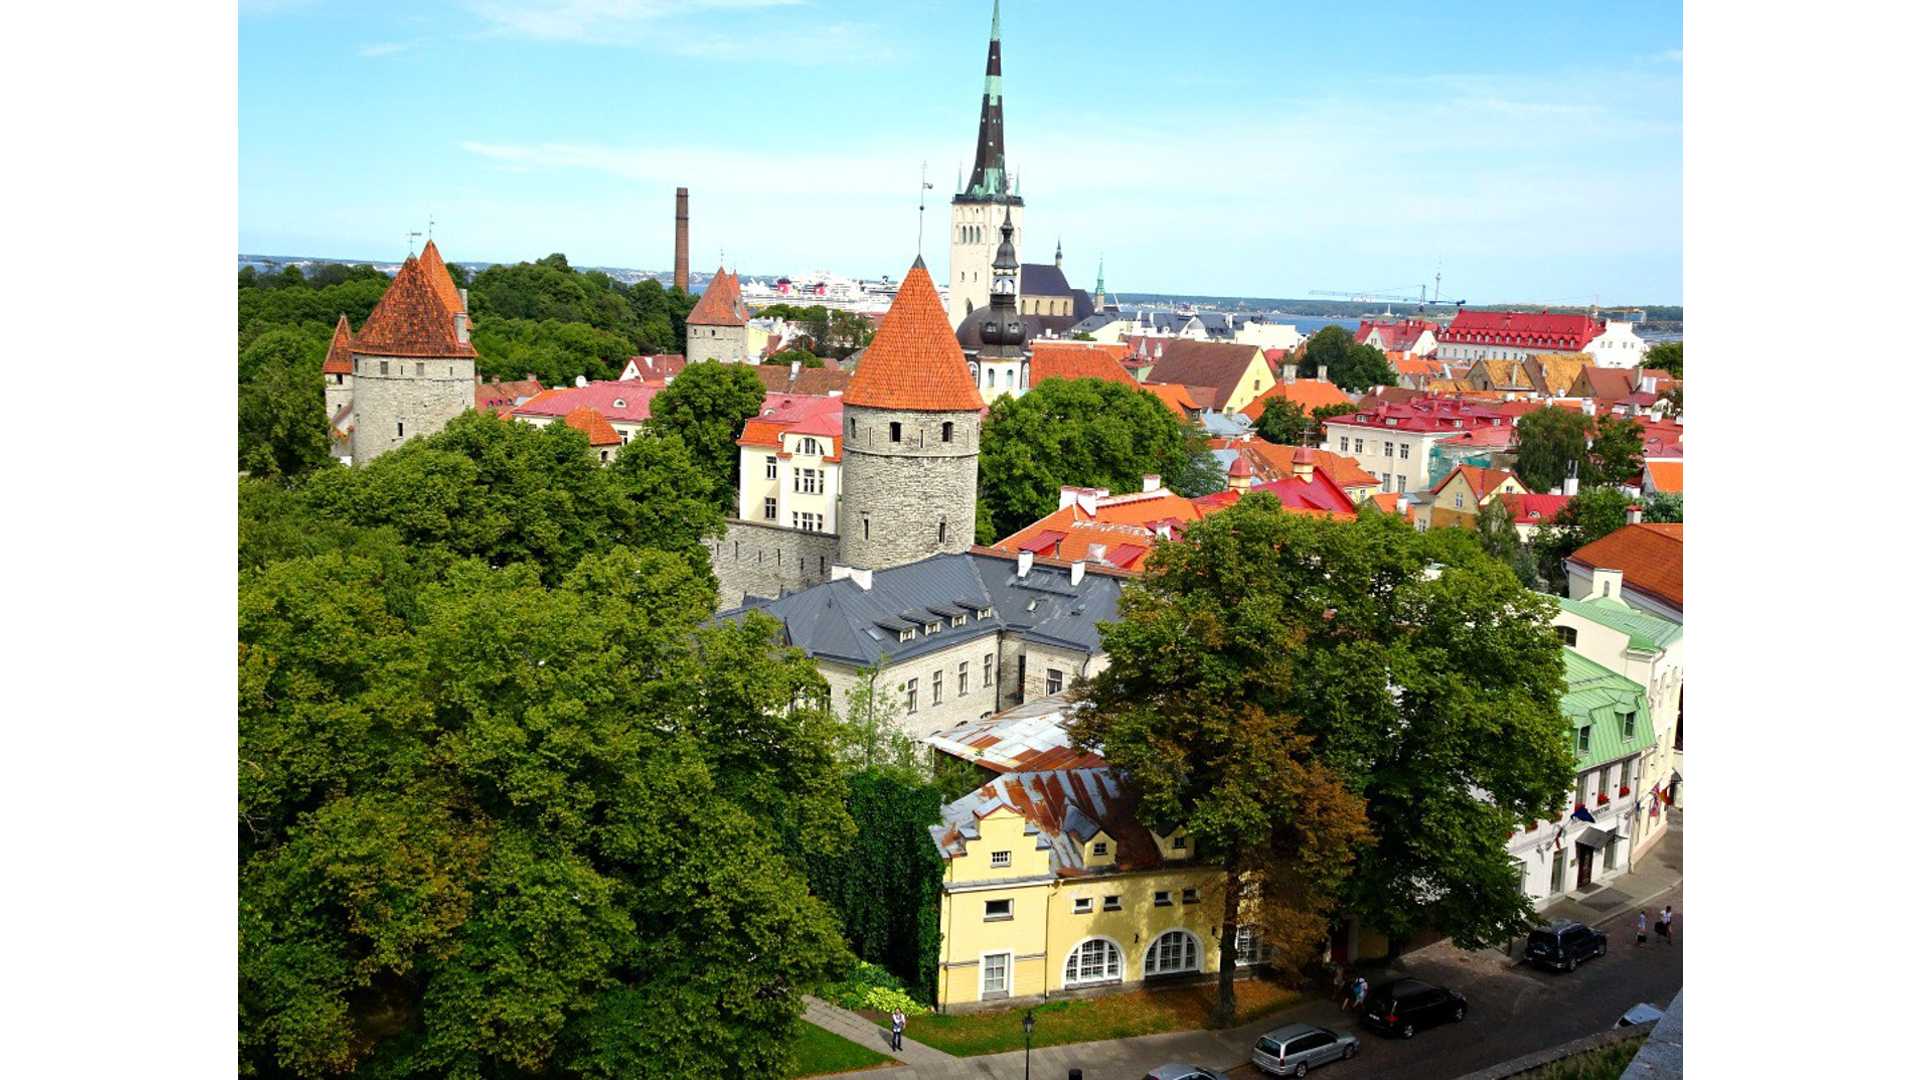 a view of Tallinn, Estonia